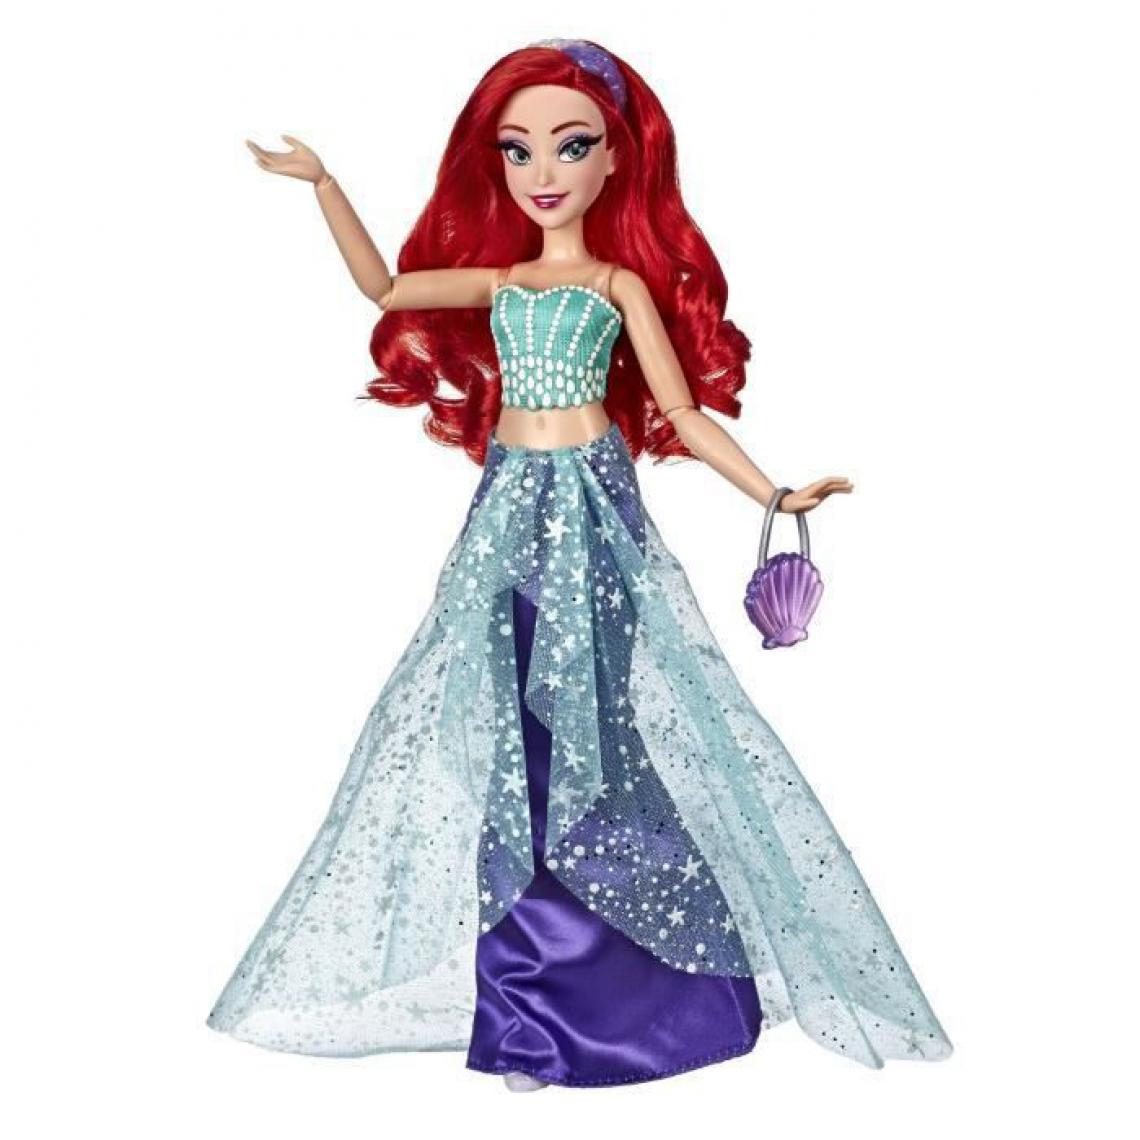 Hasbro - Disney Princesses - Poupee Princesse Disney Serie Style Ariel - 30 cm - Films et séries